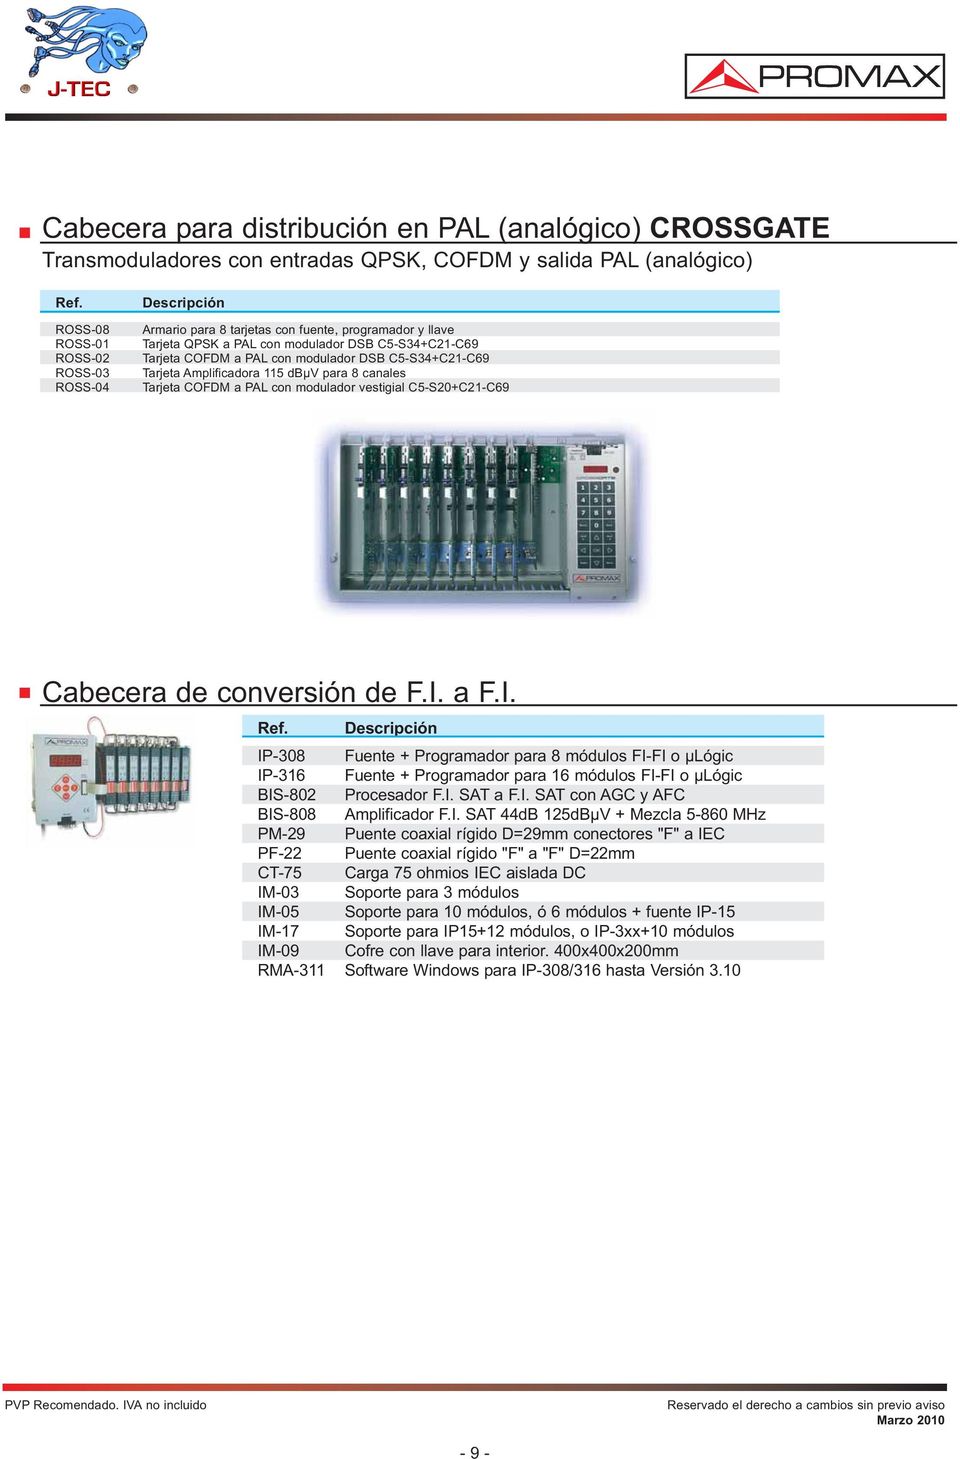 ROSS-04 Tarjeta COFDM a PAL con modulador vestigial C5-S20+C21-C69 450,00 Cabecera de conversión de F.I.